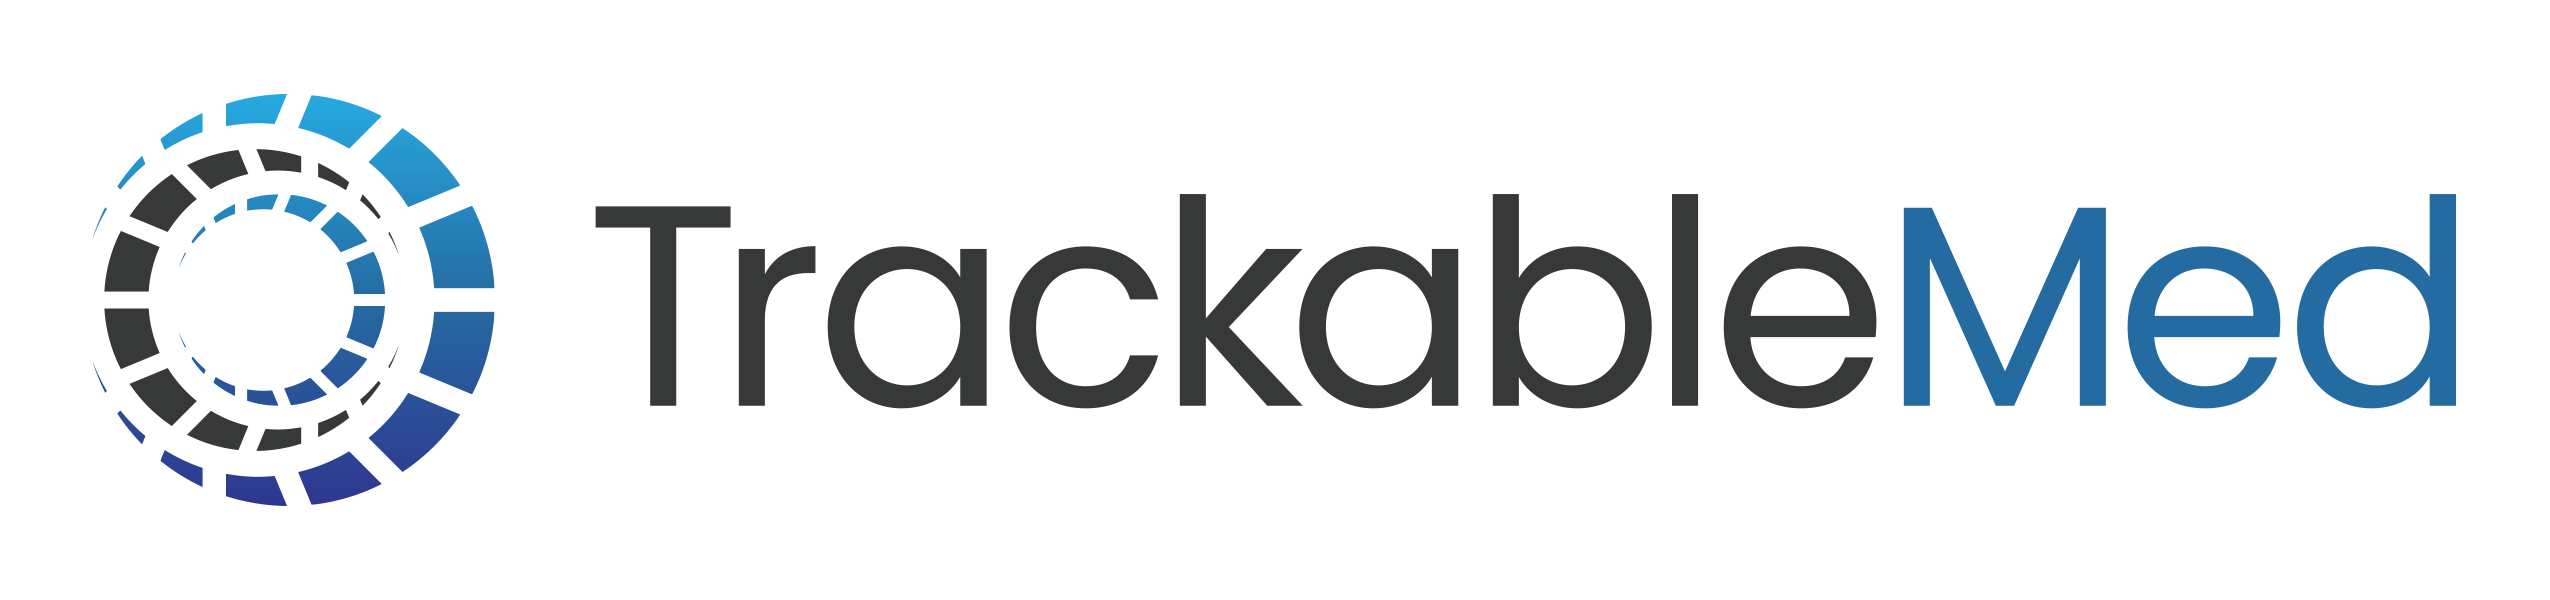 TrackableMed Company Logo